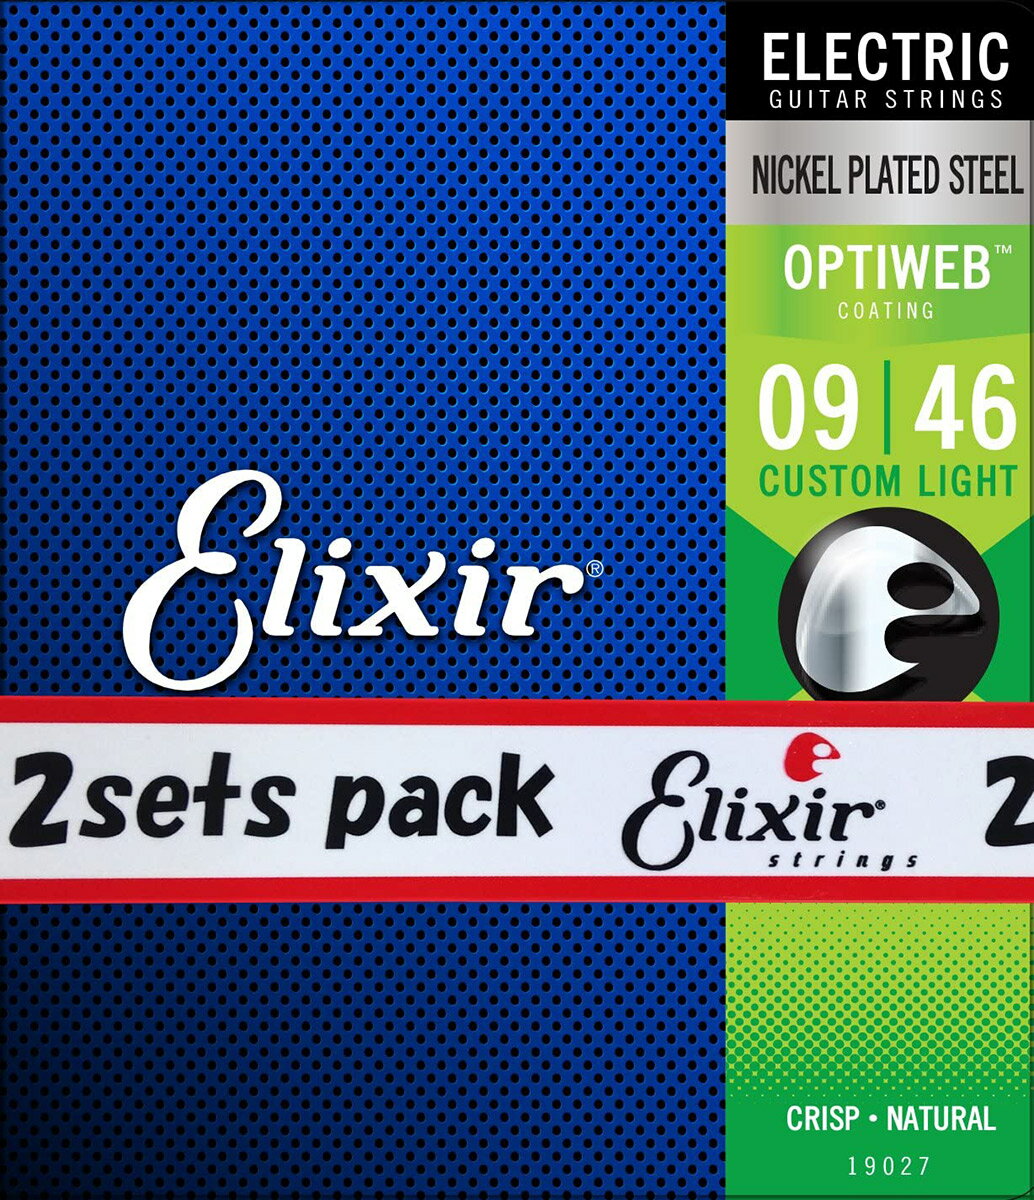 Elixir OPTIWEB 09-46 カスタムライト 2セット 19027 エリクサー エレキギター弦 お買い得な2パック